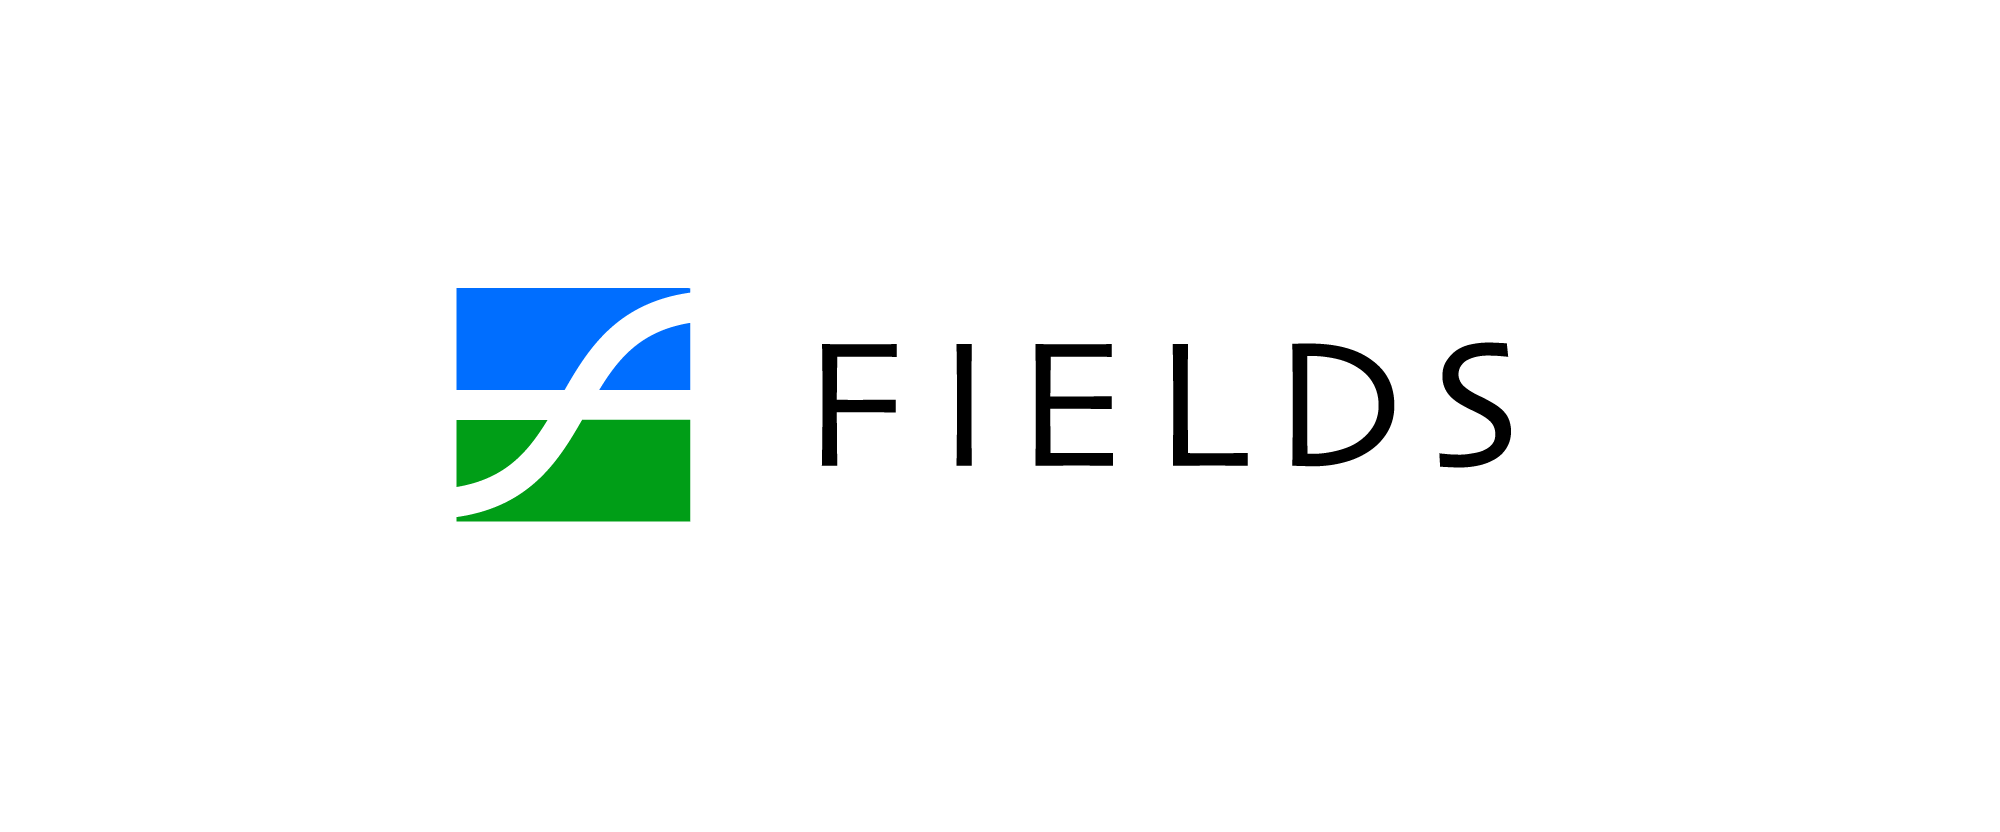 New Logo and Identity for Fields by Chermayeff & Geismar & Haviv